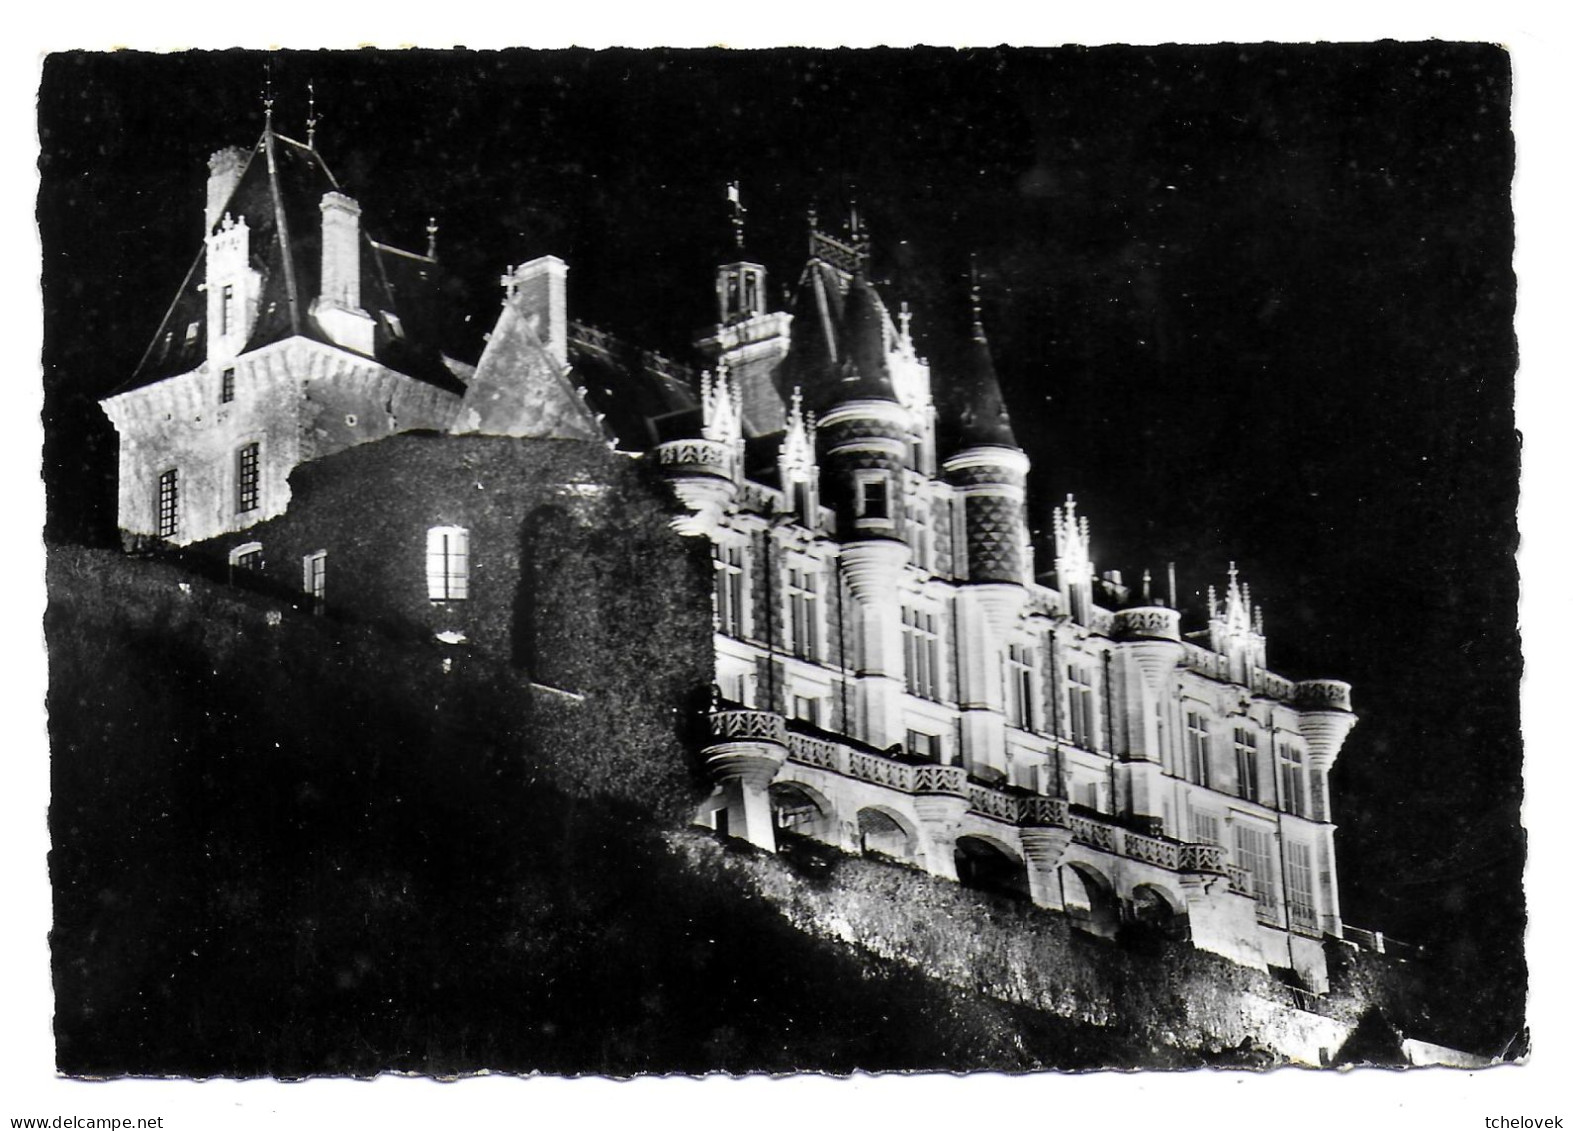 (28). Eure Et Loir. Cloyes Sur Le Loir. 3 Cp. Chateau De Montigny Le Gannelon (1) 1954 & (2) & (3) - Cloyes-sur-le-Loir